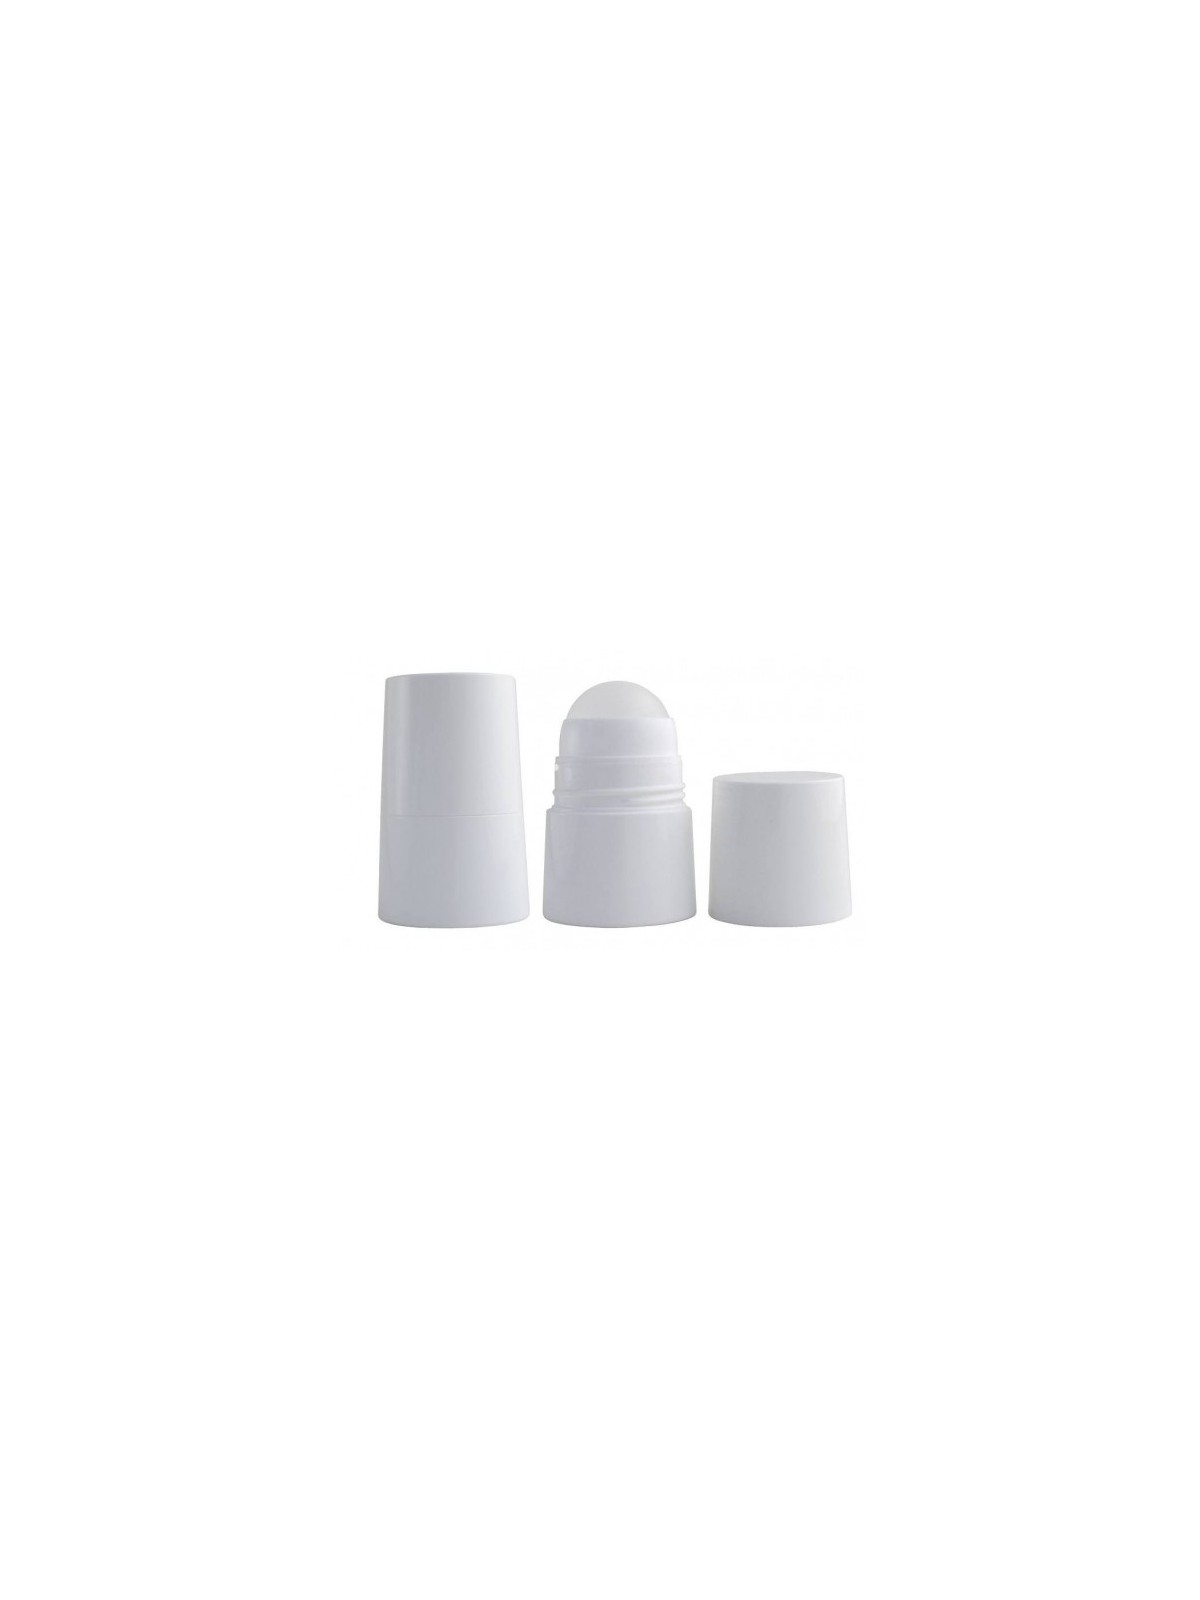 Flacon plastic blanc à bille (Roller) 50ml à recharger